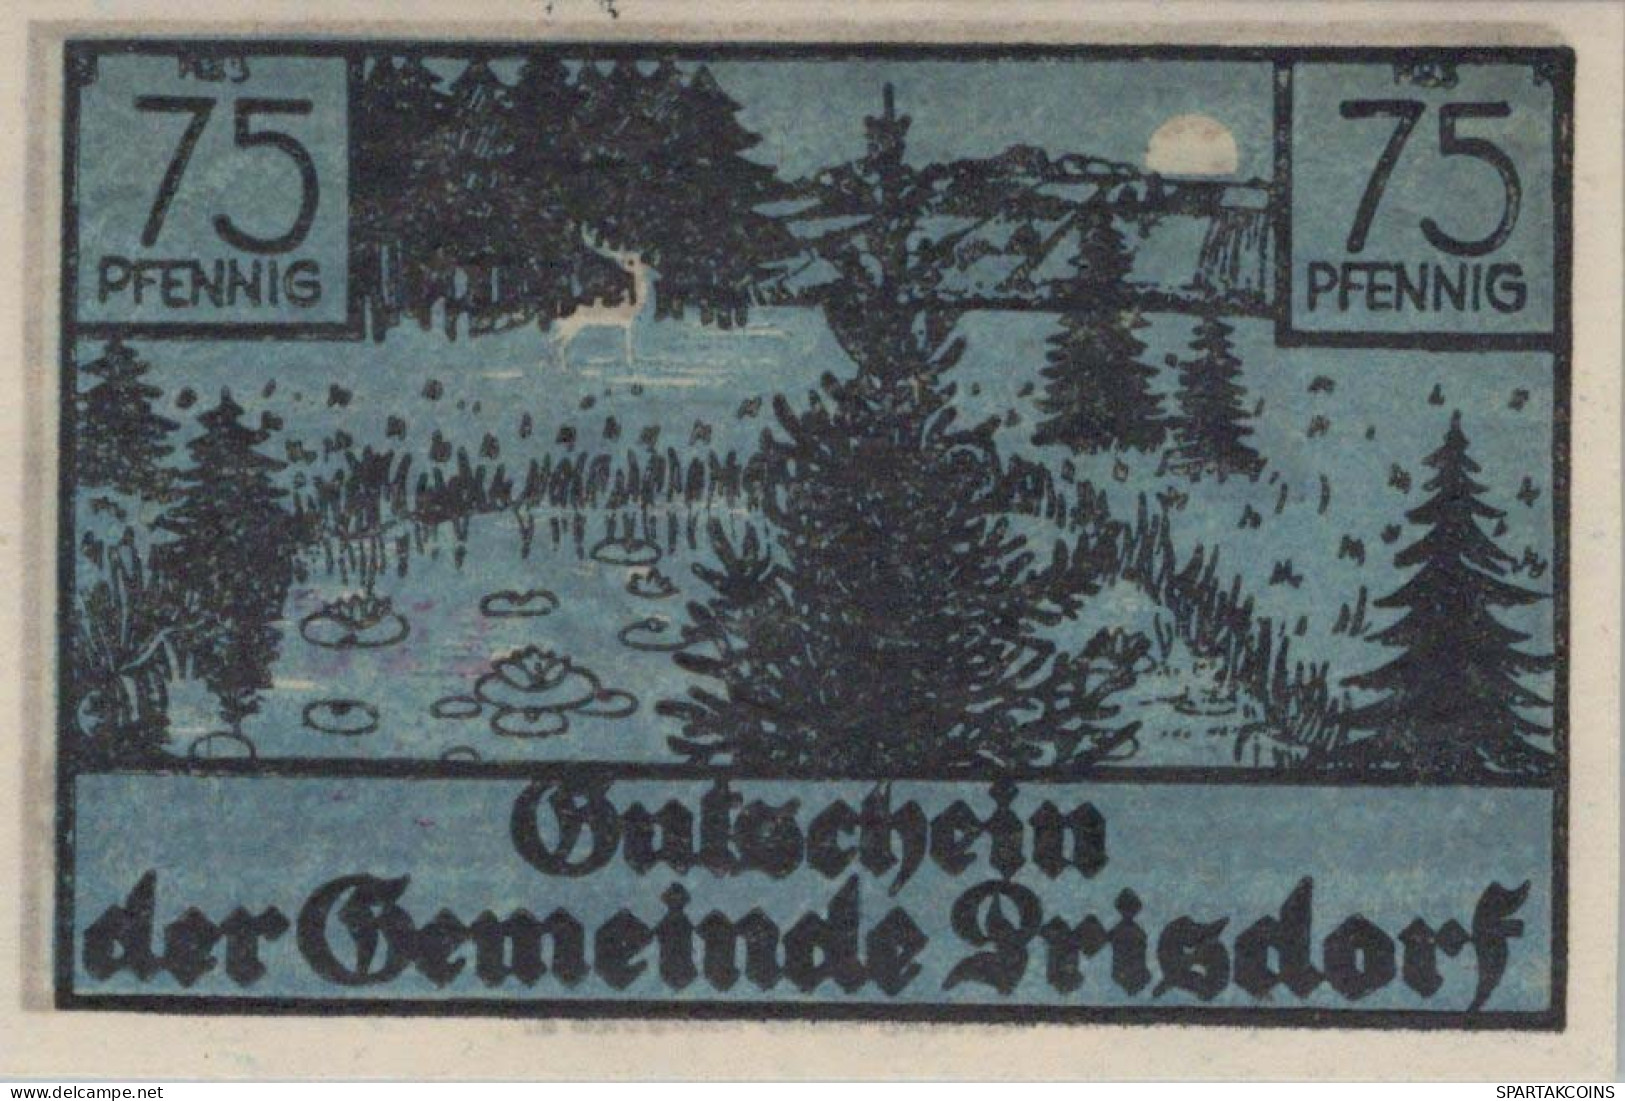 75 PFENNIG 1914-1924 Stadt Prisdorf Schleswig-Holstein UNC DEUTSCHLAND #PB763 - Lokale Ausgaben